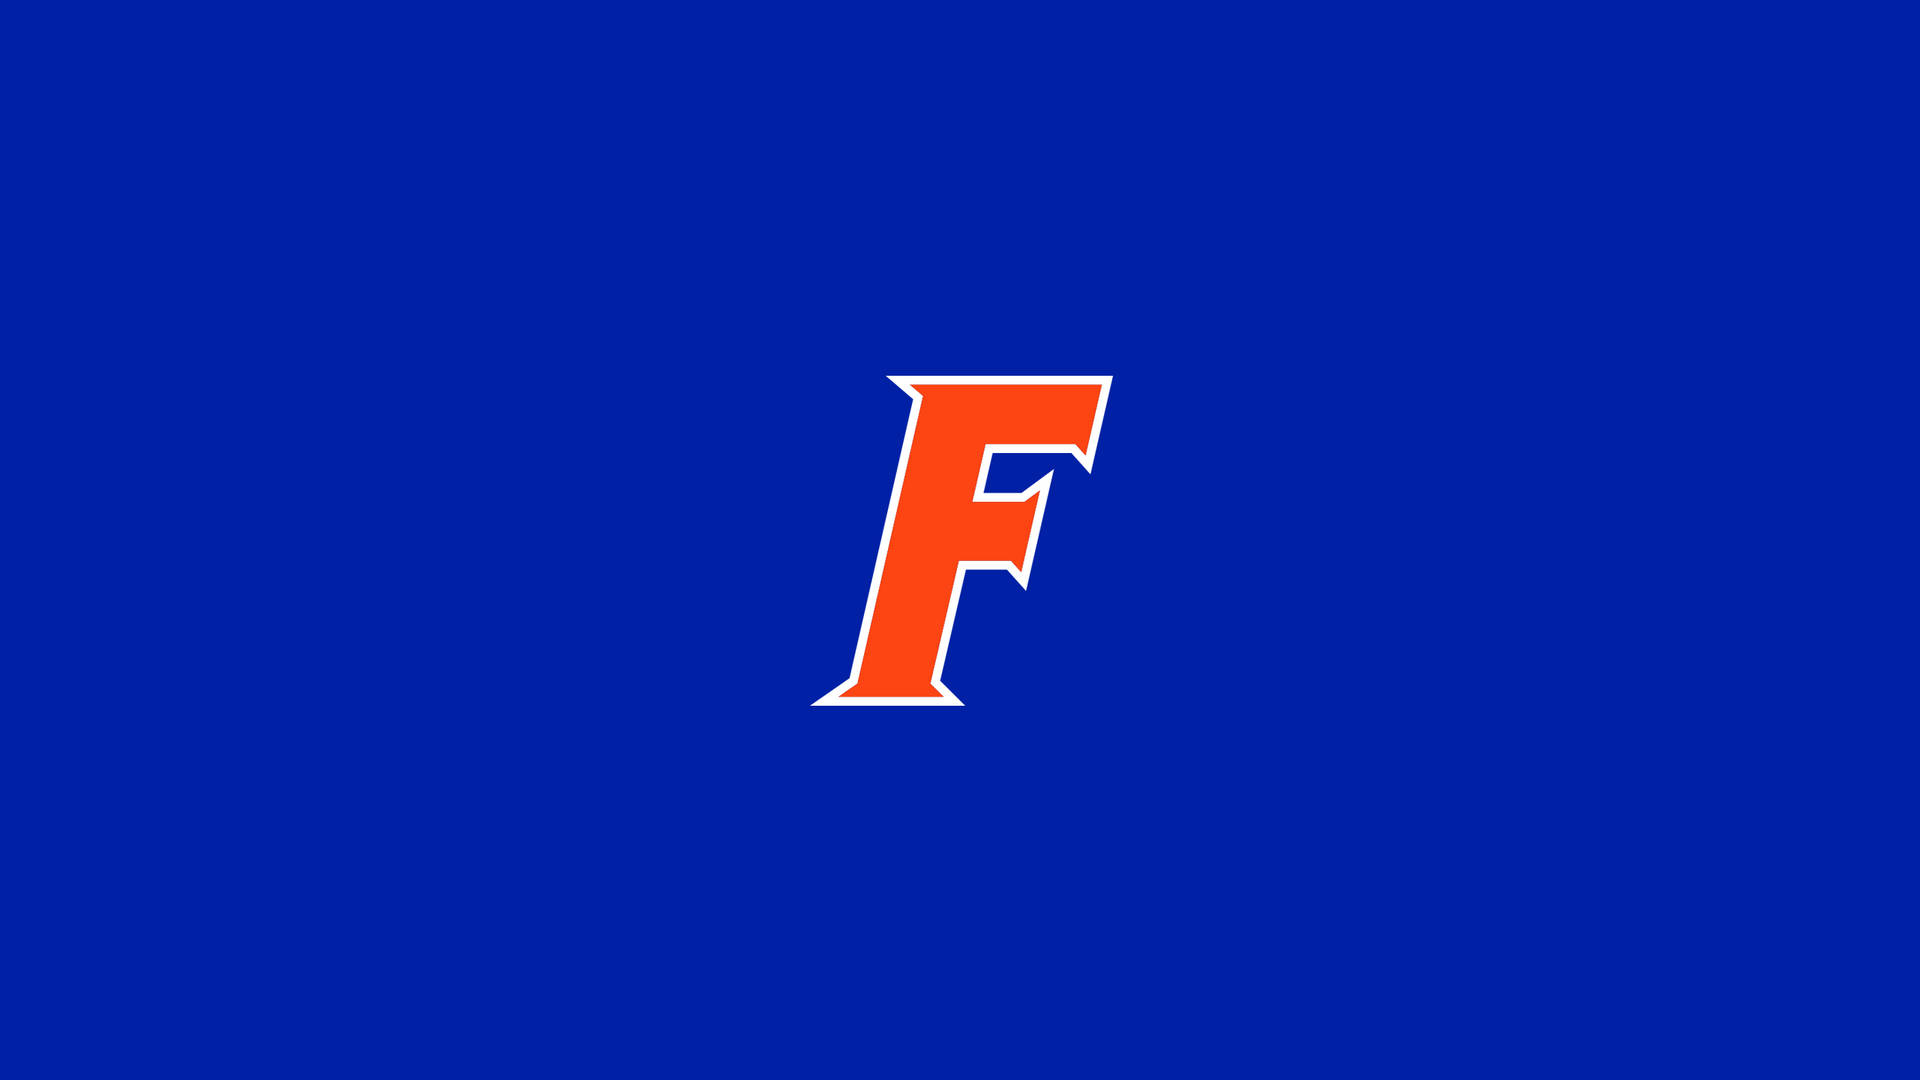 University Of Florida F Logo Background